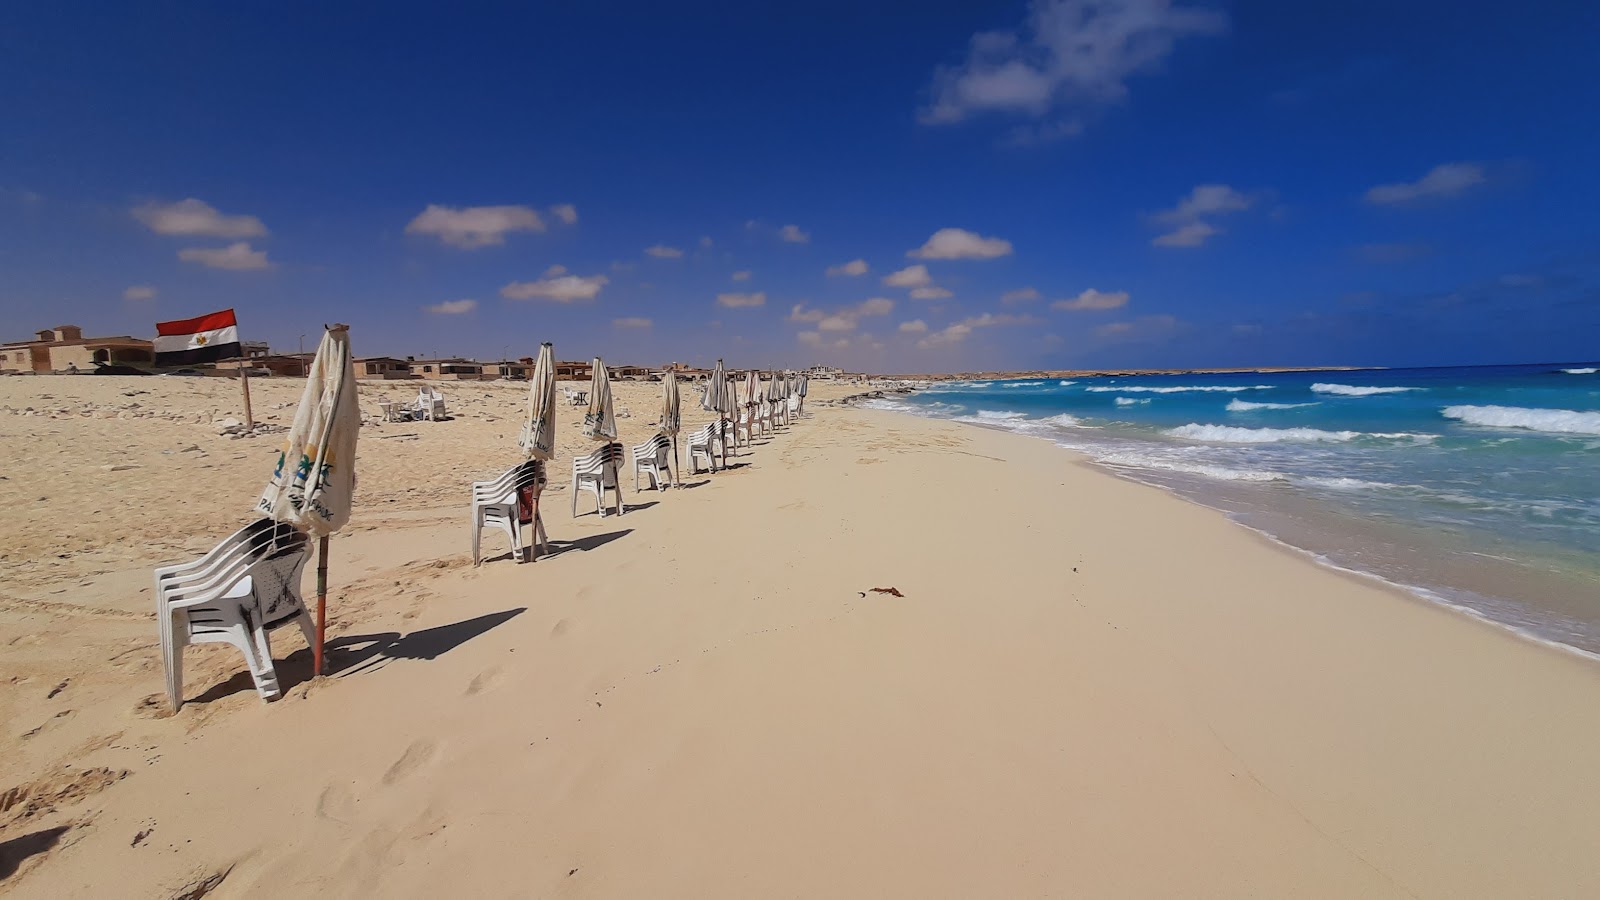 Matrouh Beach'in fotoğrafı geniş plaj ile birlikte